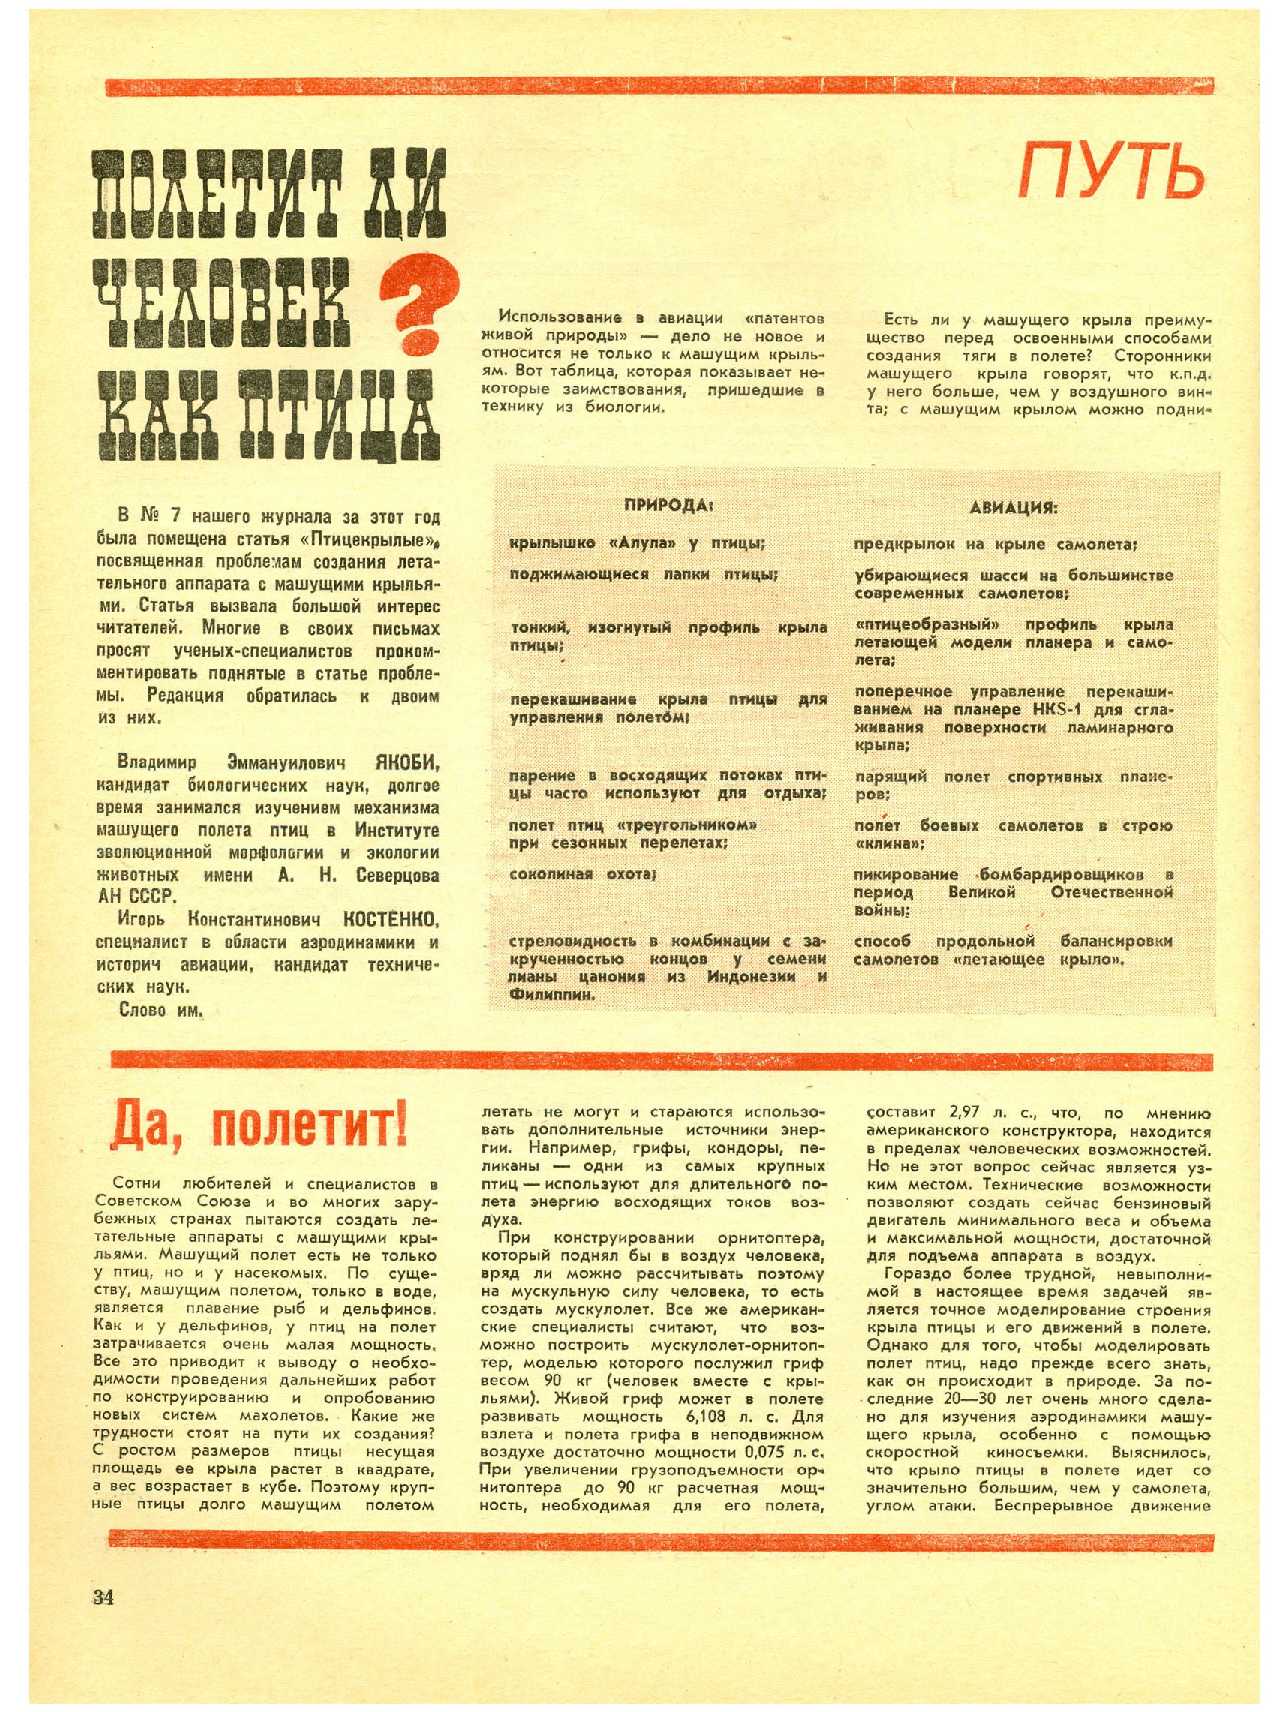 МК 11, 1972, 34 c.